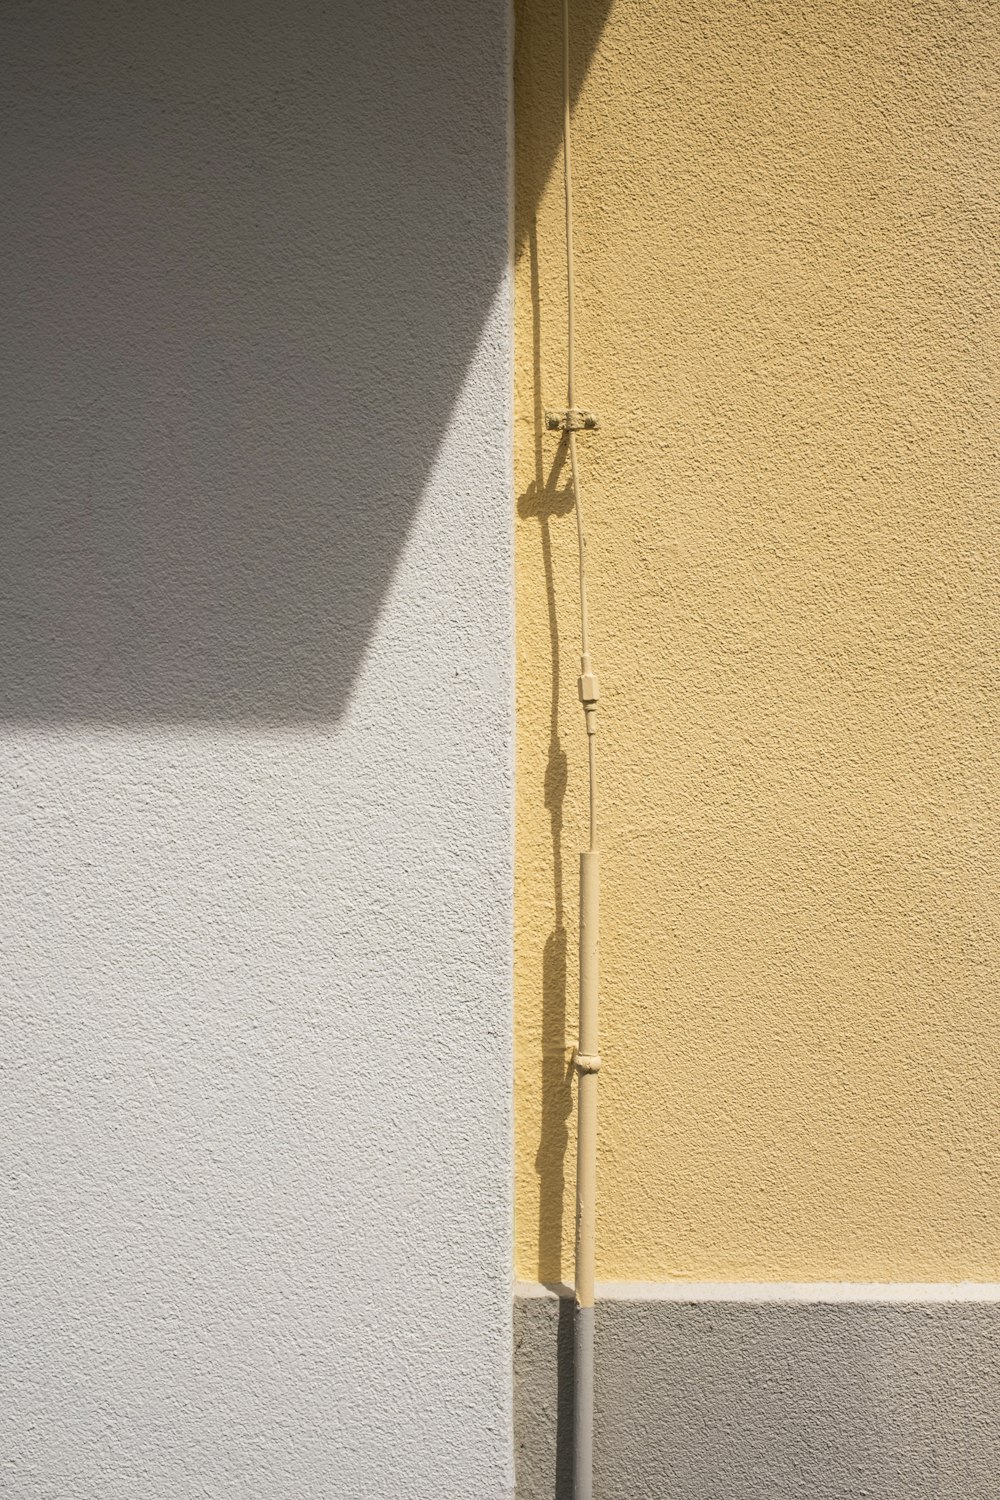 porta de madeira amarela com alavanca de prata da porta